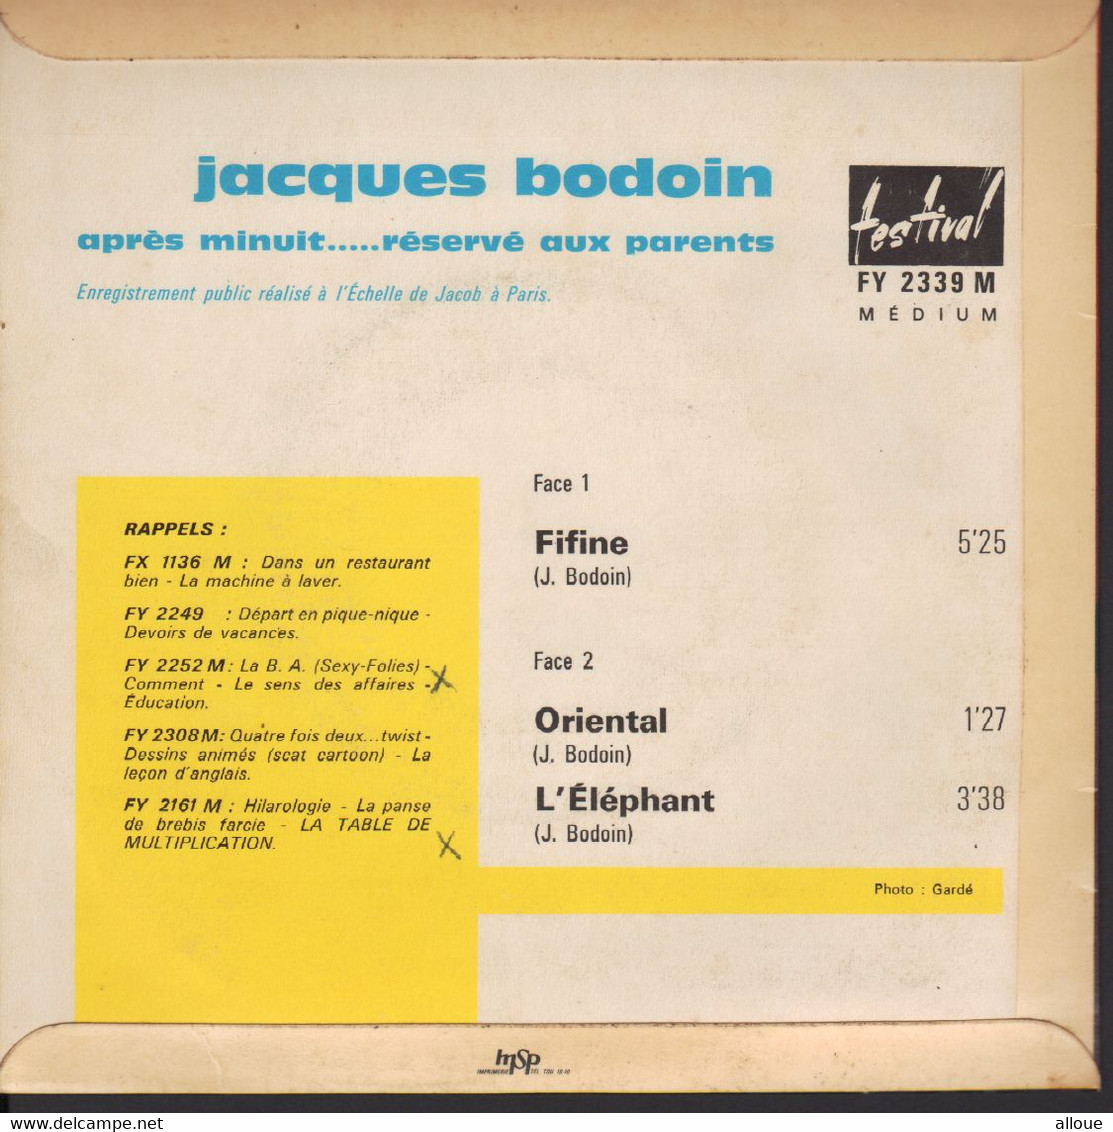 JACQUES BODOIN - APRES MINUIT + 2 - Humour, Cabaret